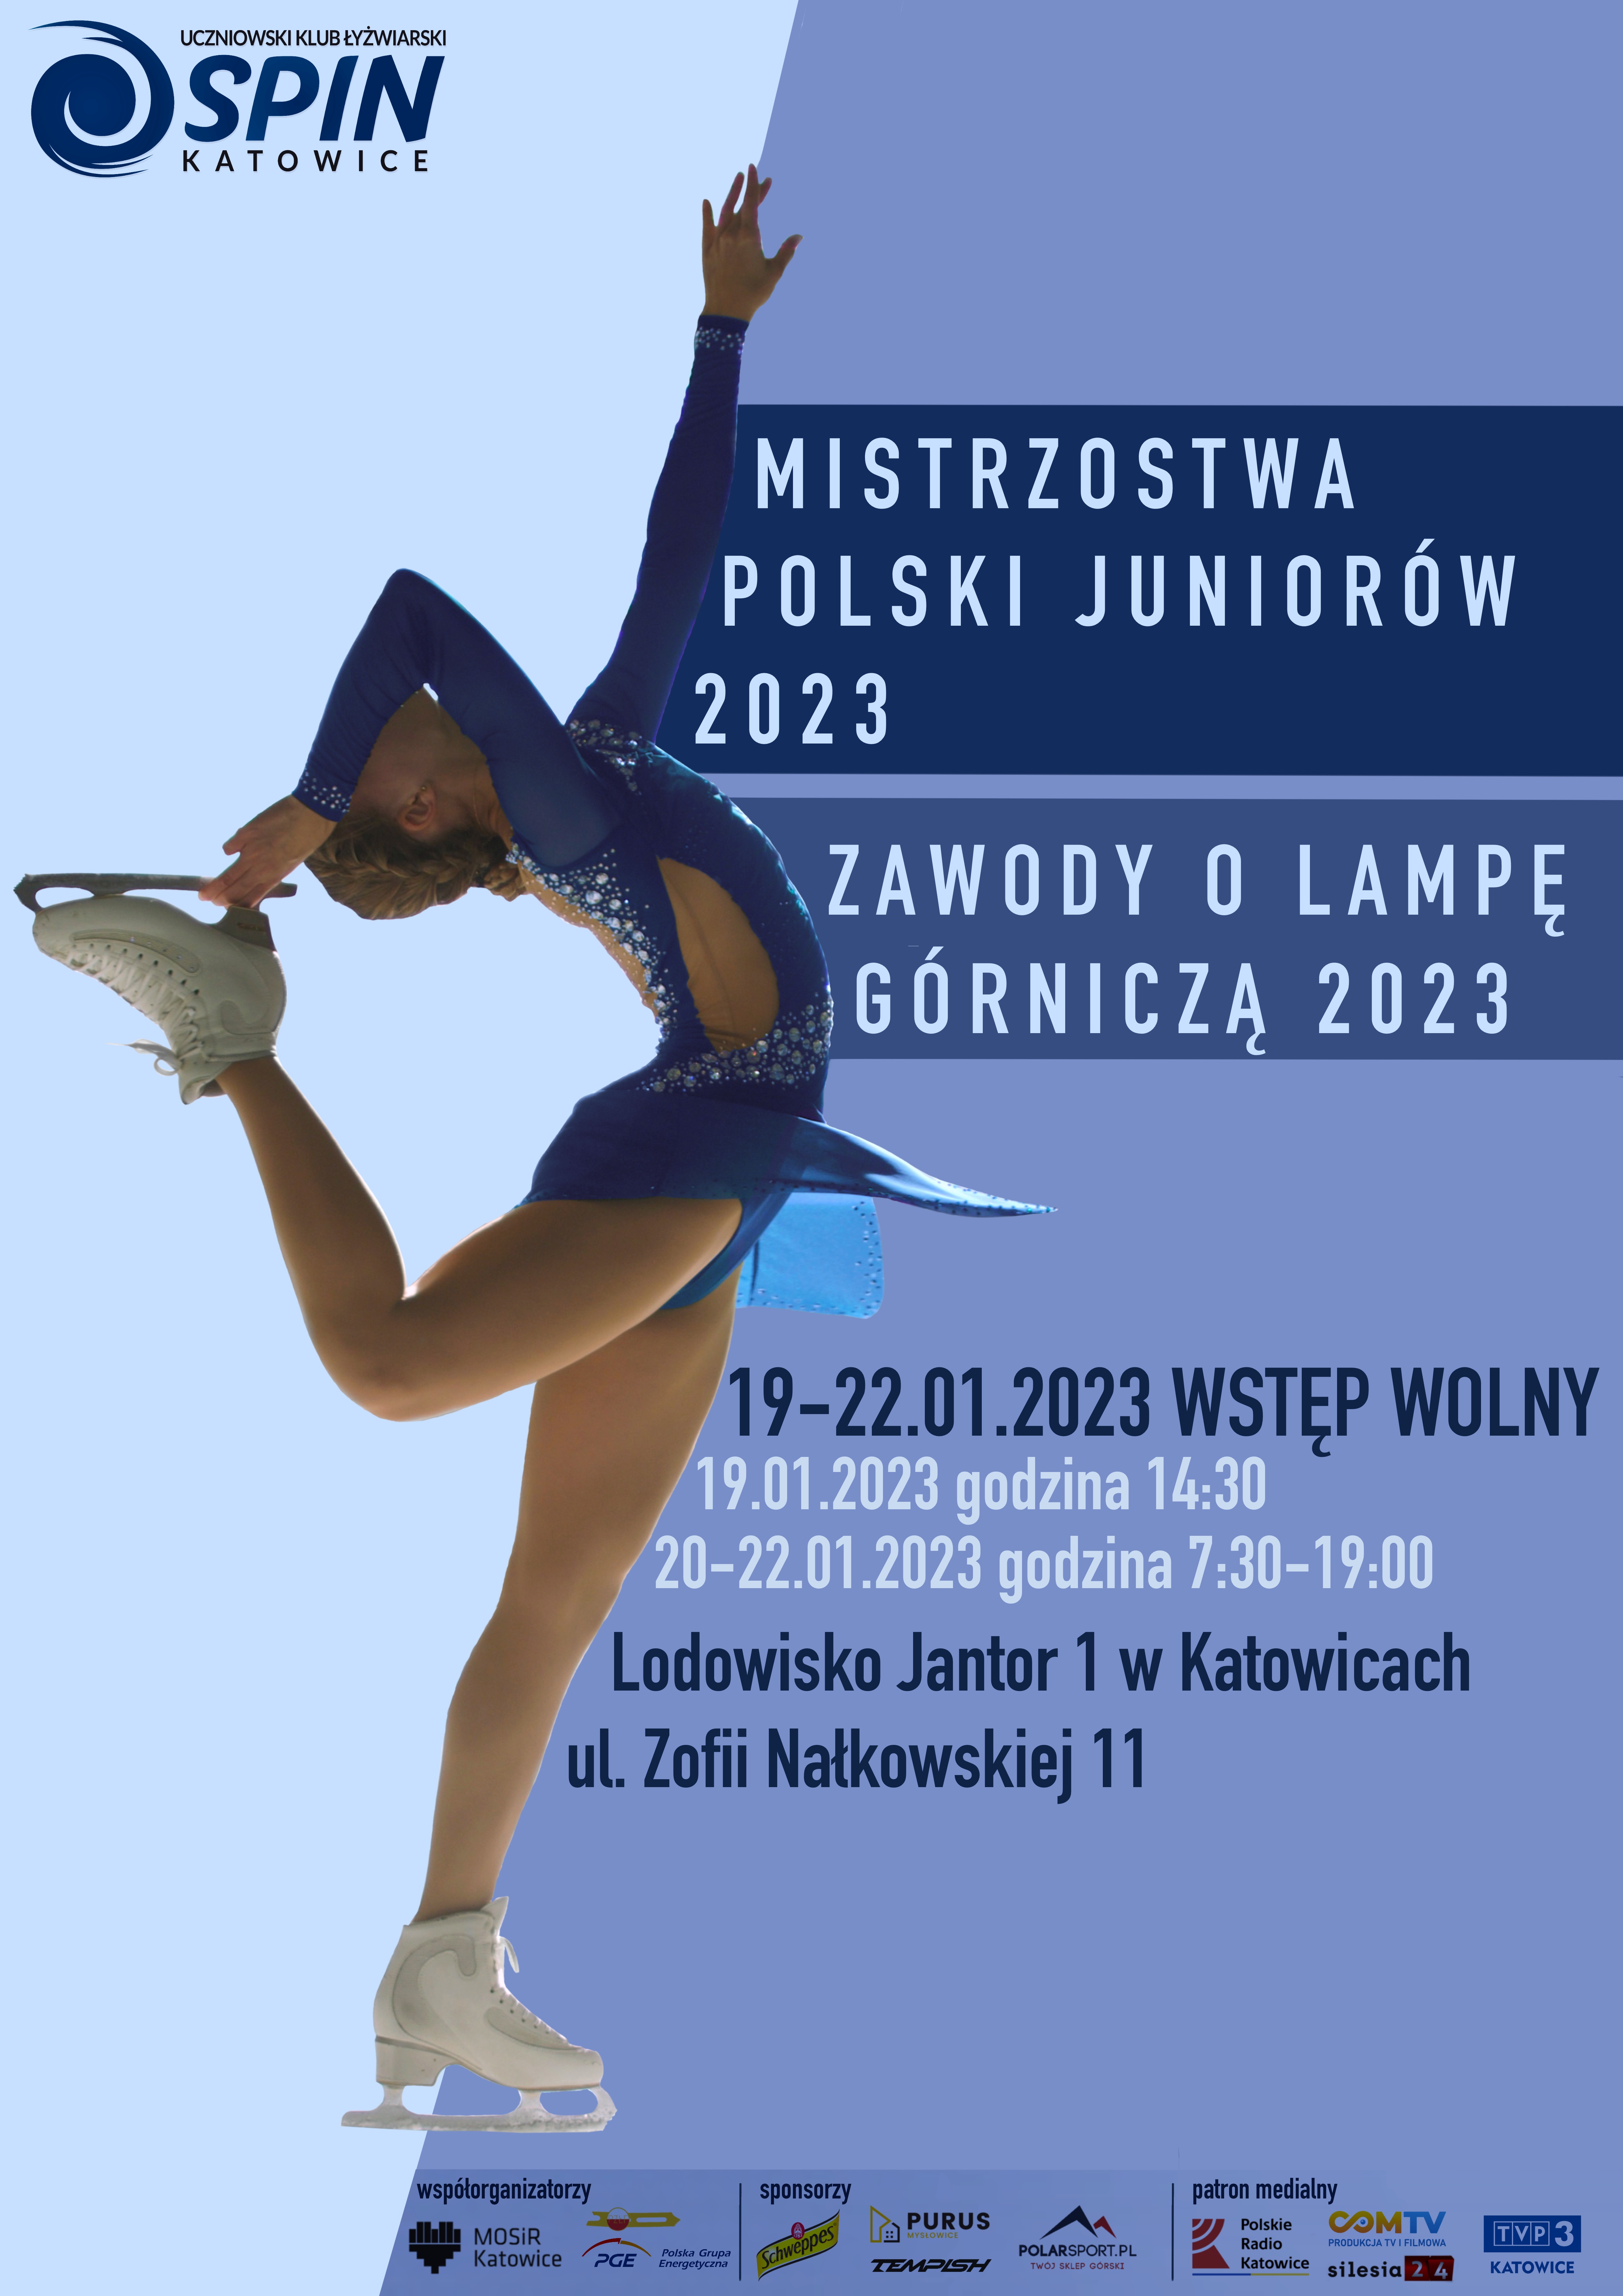 Mistrzostwa Polski Juniorów oraz Zawody o Lampę Górniczą 2023